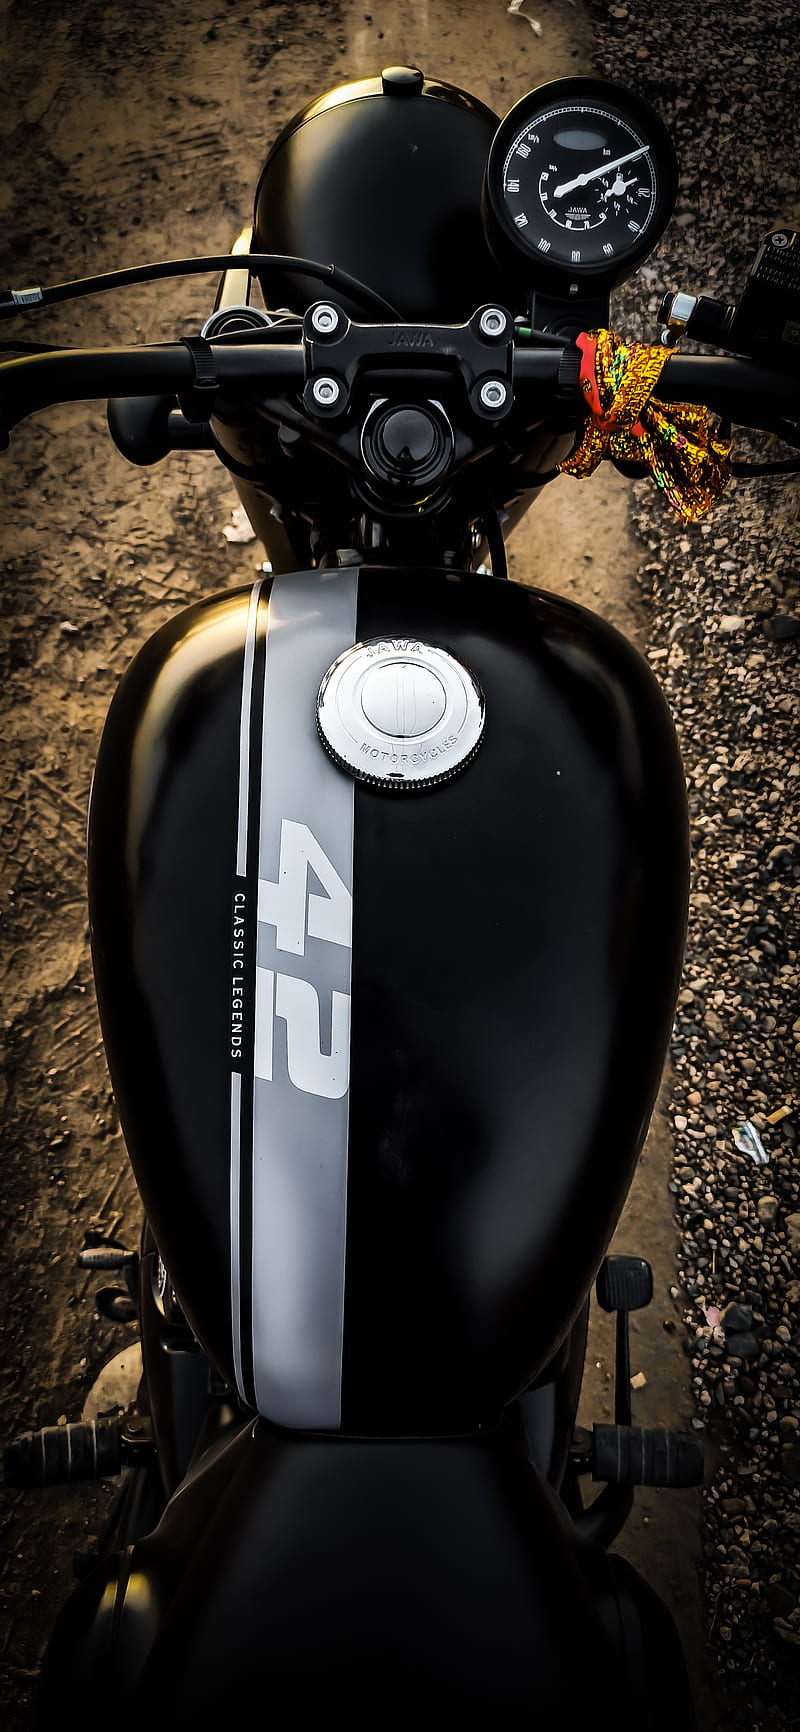 Jawa42, bike, motorcycle, HD phone wallpaper | Peakpx